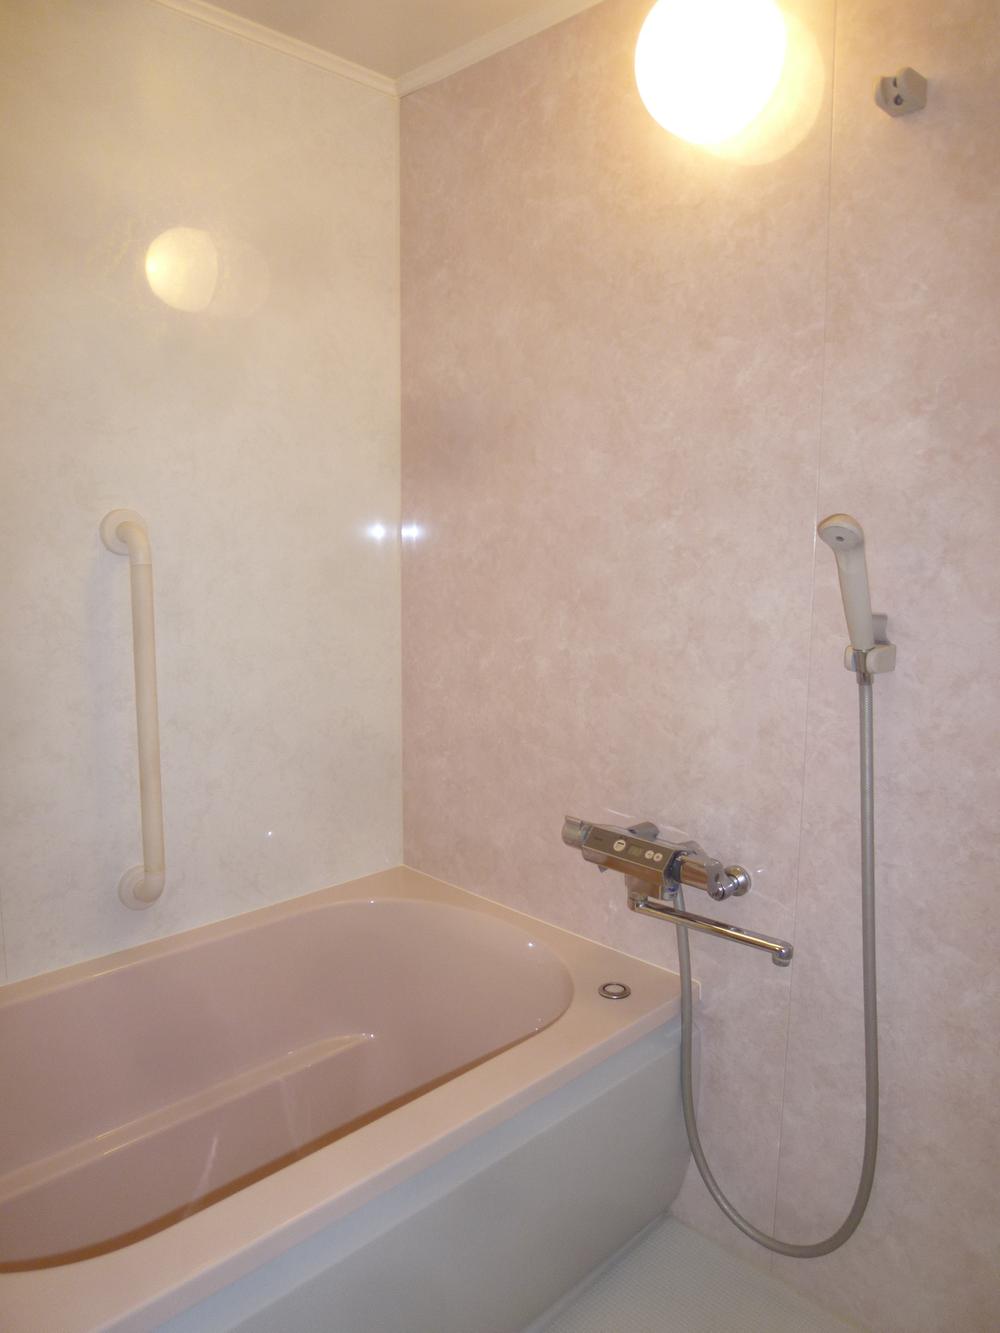 Bathroom. 2013 November 8 shooting TOTO made thermos tub